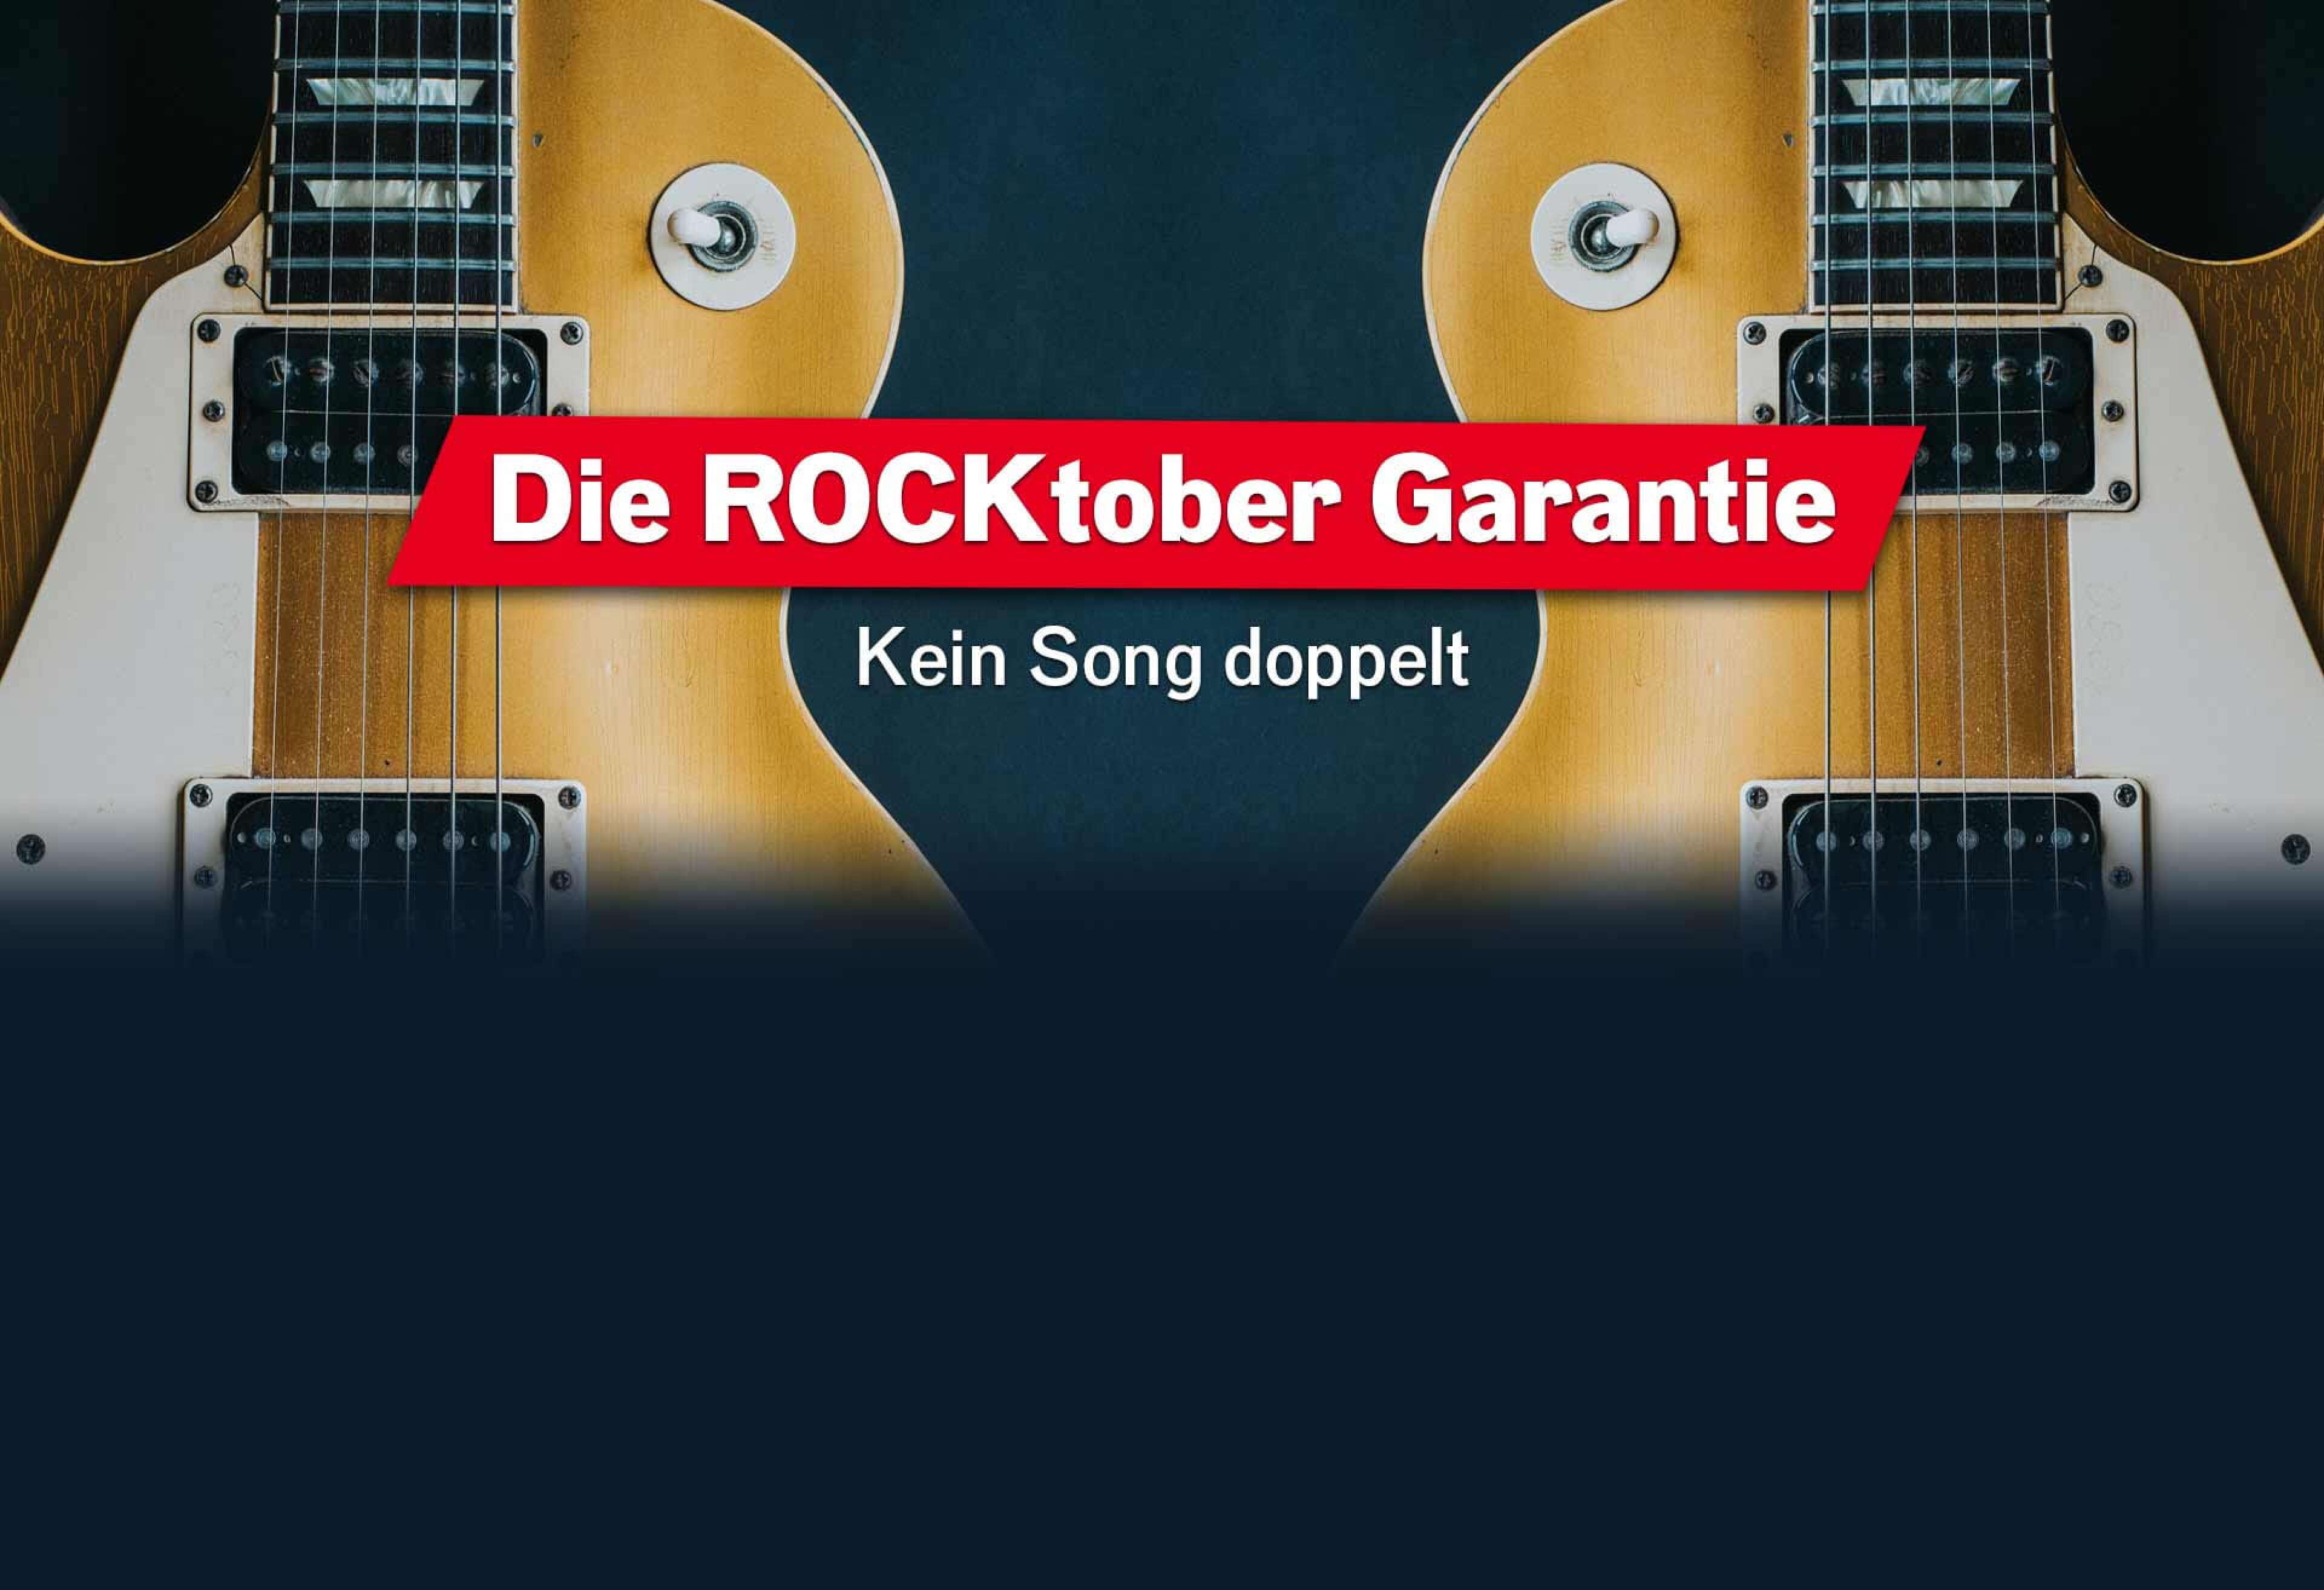 Bildausschnitt einer Gitarre mit Spiegelbild, Text "Die ROCKtober Garantie - kein Song doppelt"